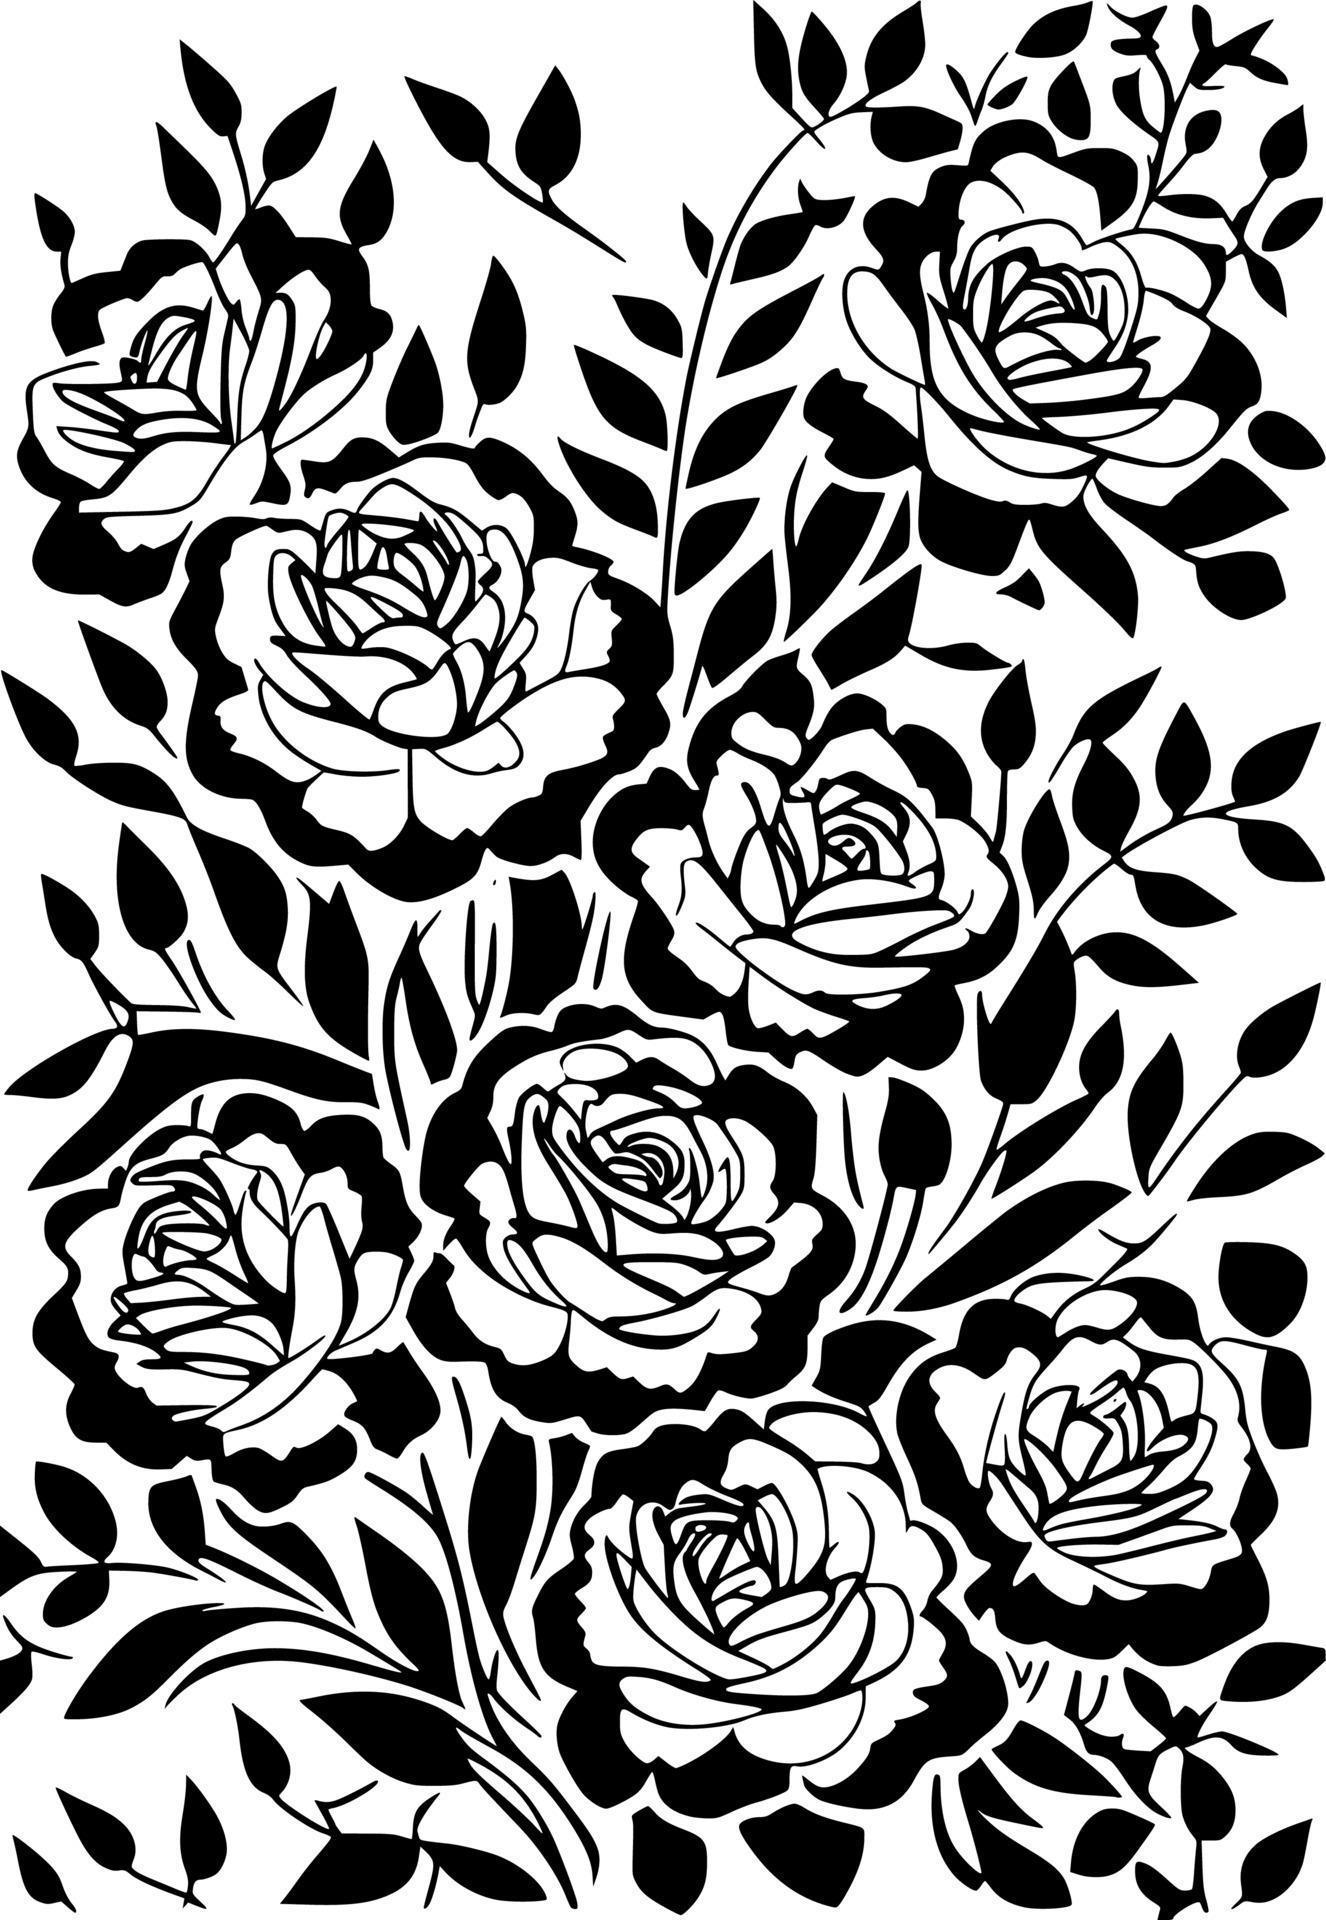 black rose flower pattern 21817327 Vector Art at Vecteezy